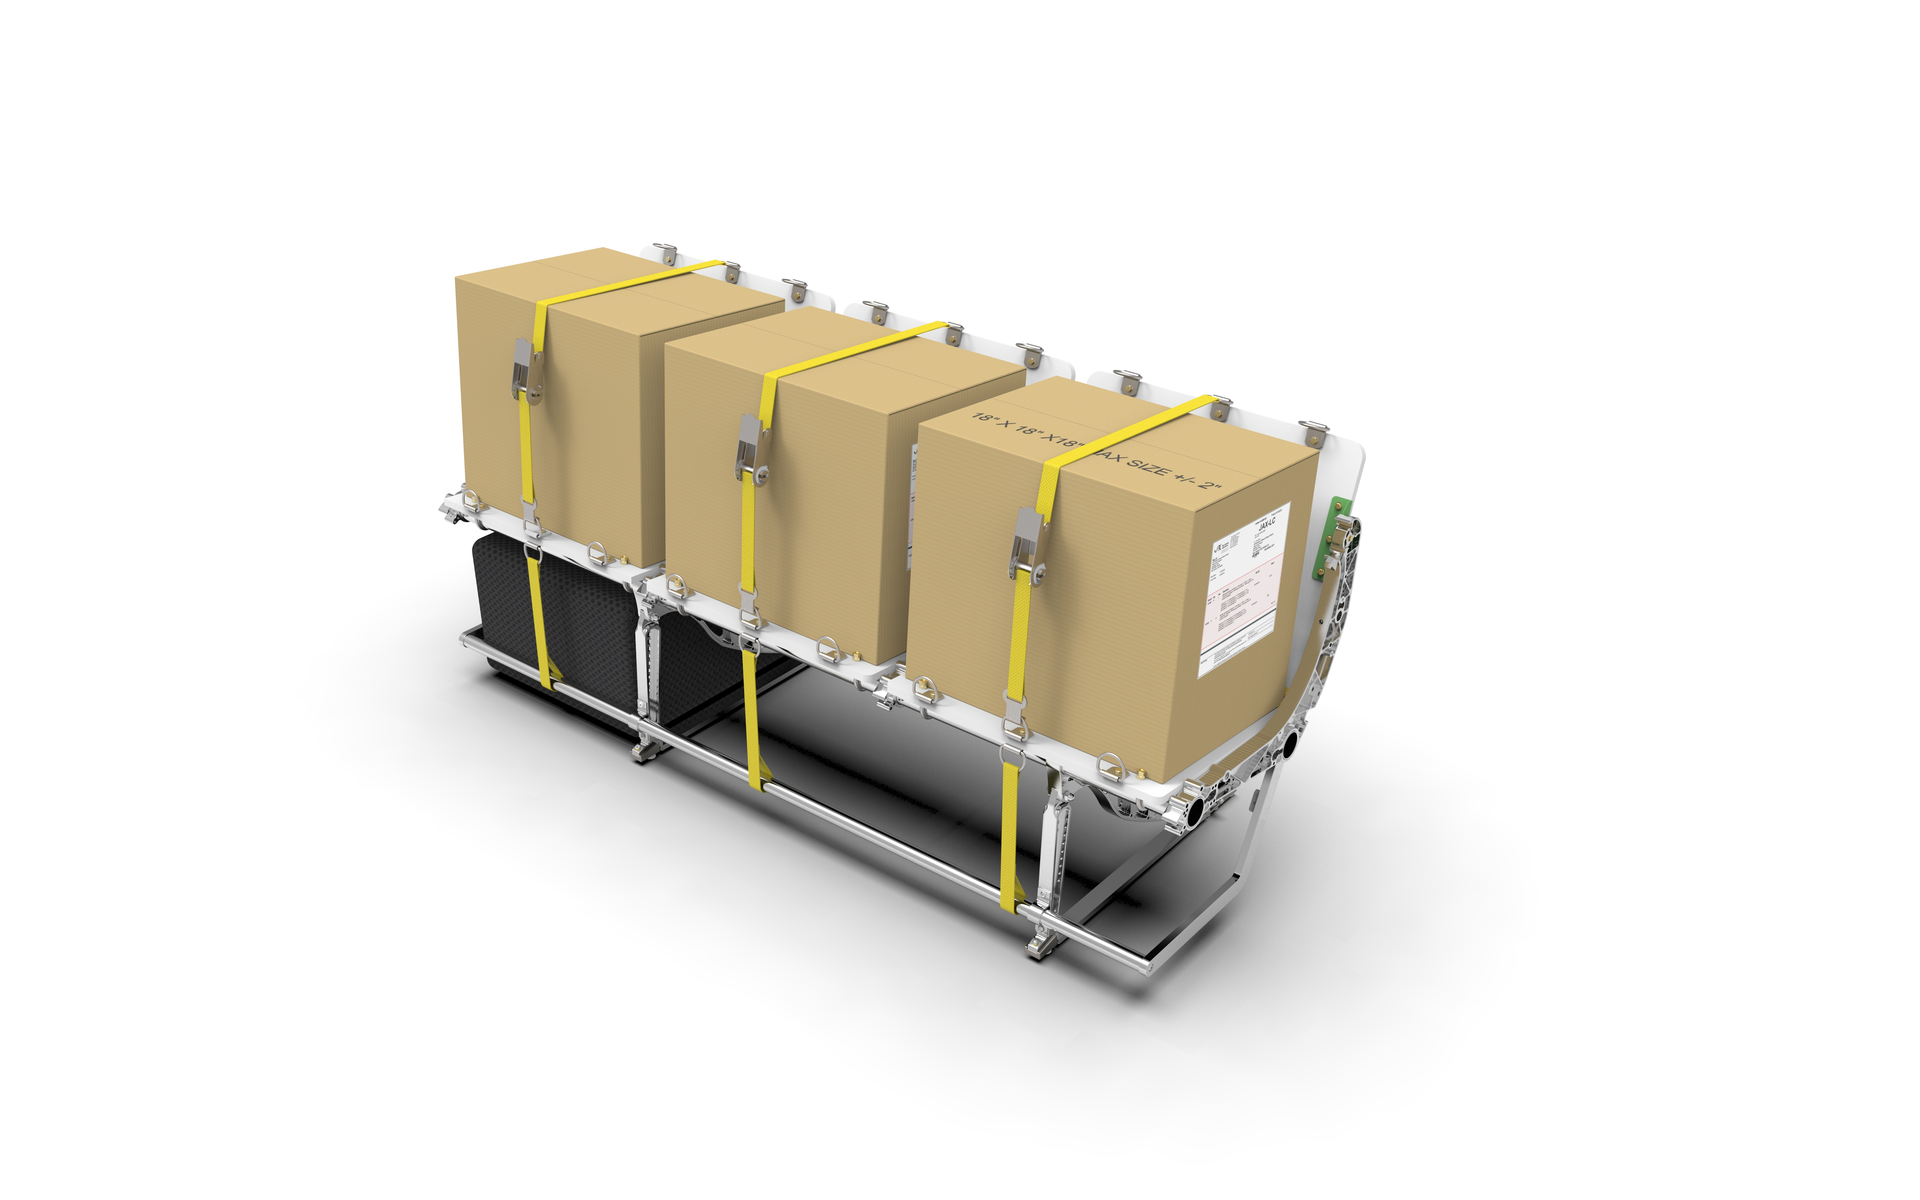 precious cargo transportation solutions facebook